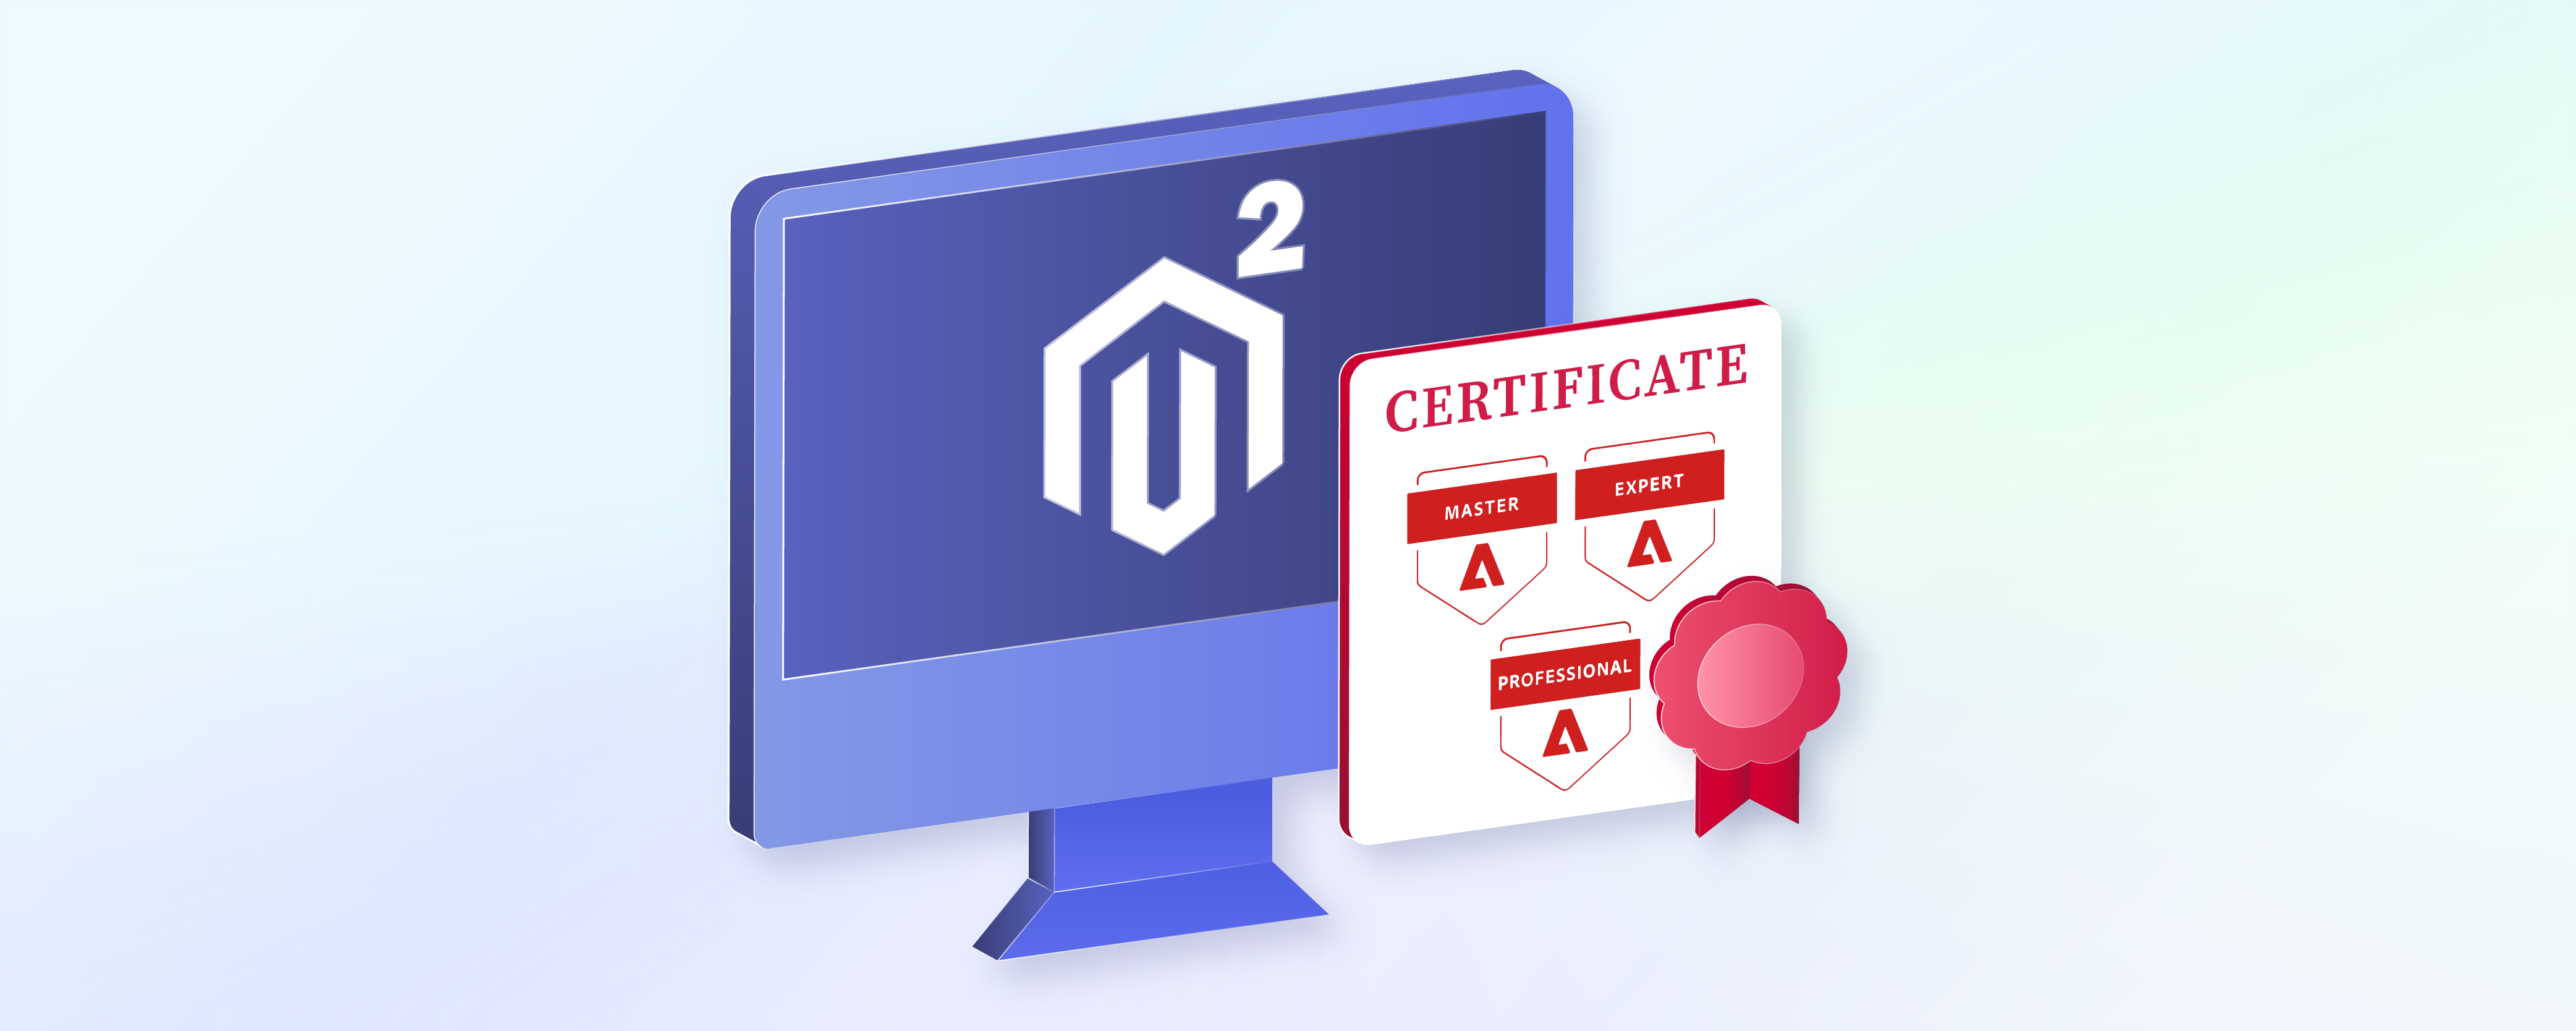 Magento 2 Certification: Register for the Magento Exam